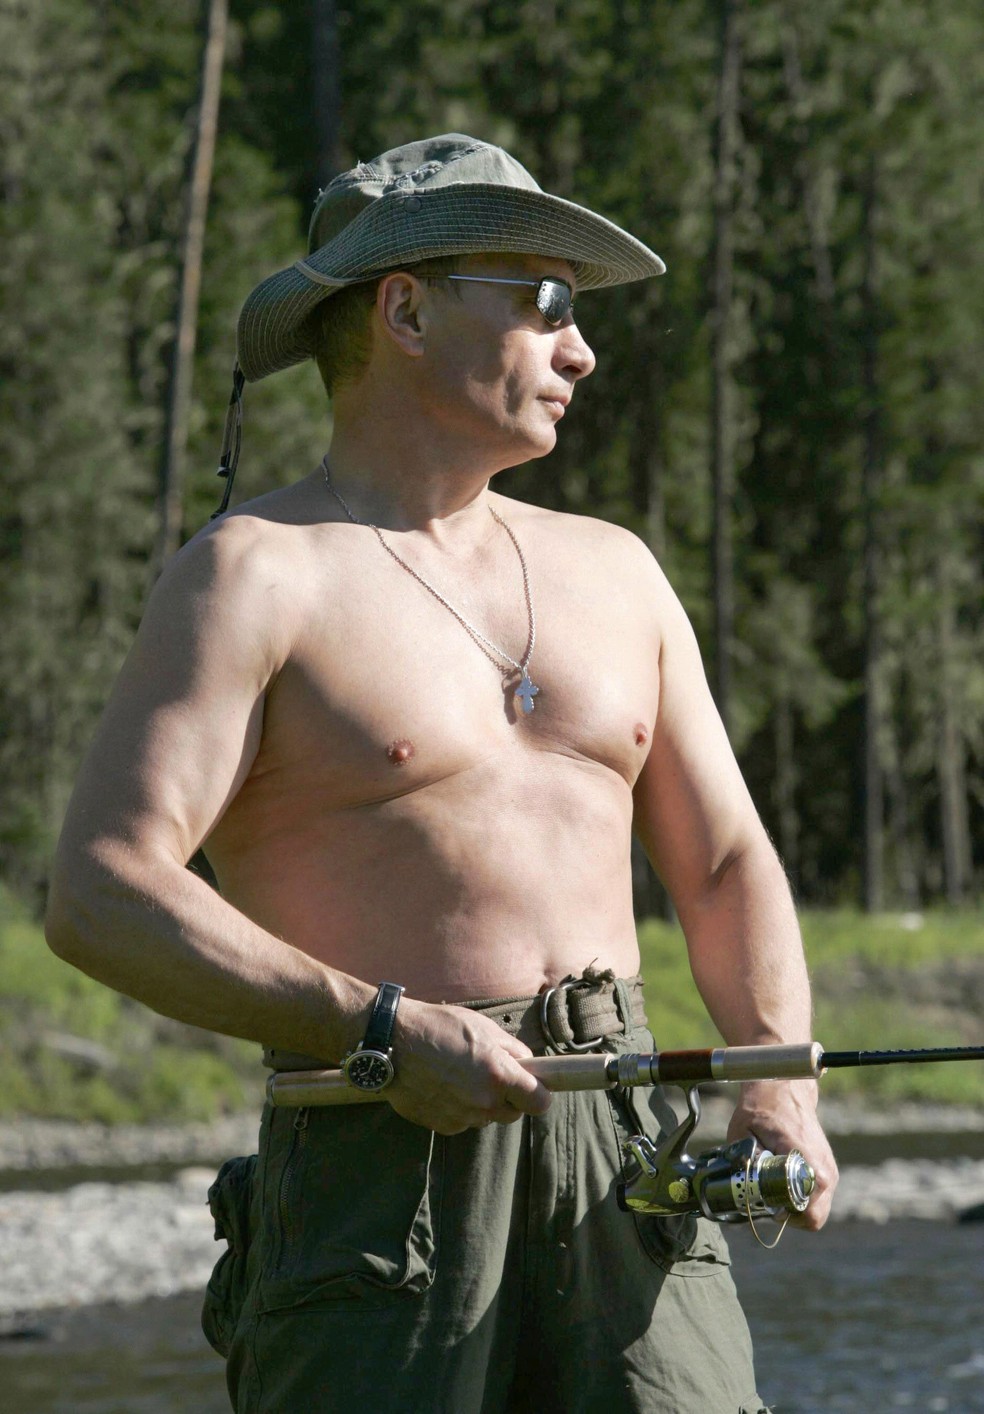 Vladimir Putin pesca, sem camisa, no rio Yenisei, na região de Tuva, perto da fronteira com a Mongólia — Foto: DMITRY ASTAKHOV/RIA-NOVOSTI/AFP